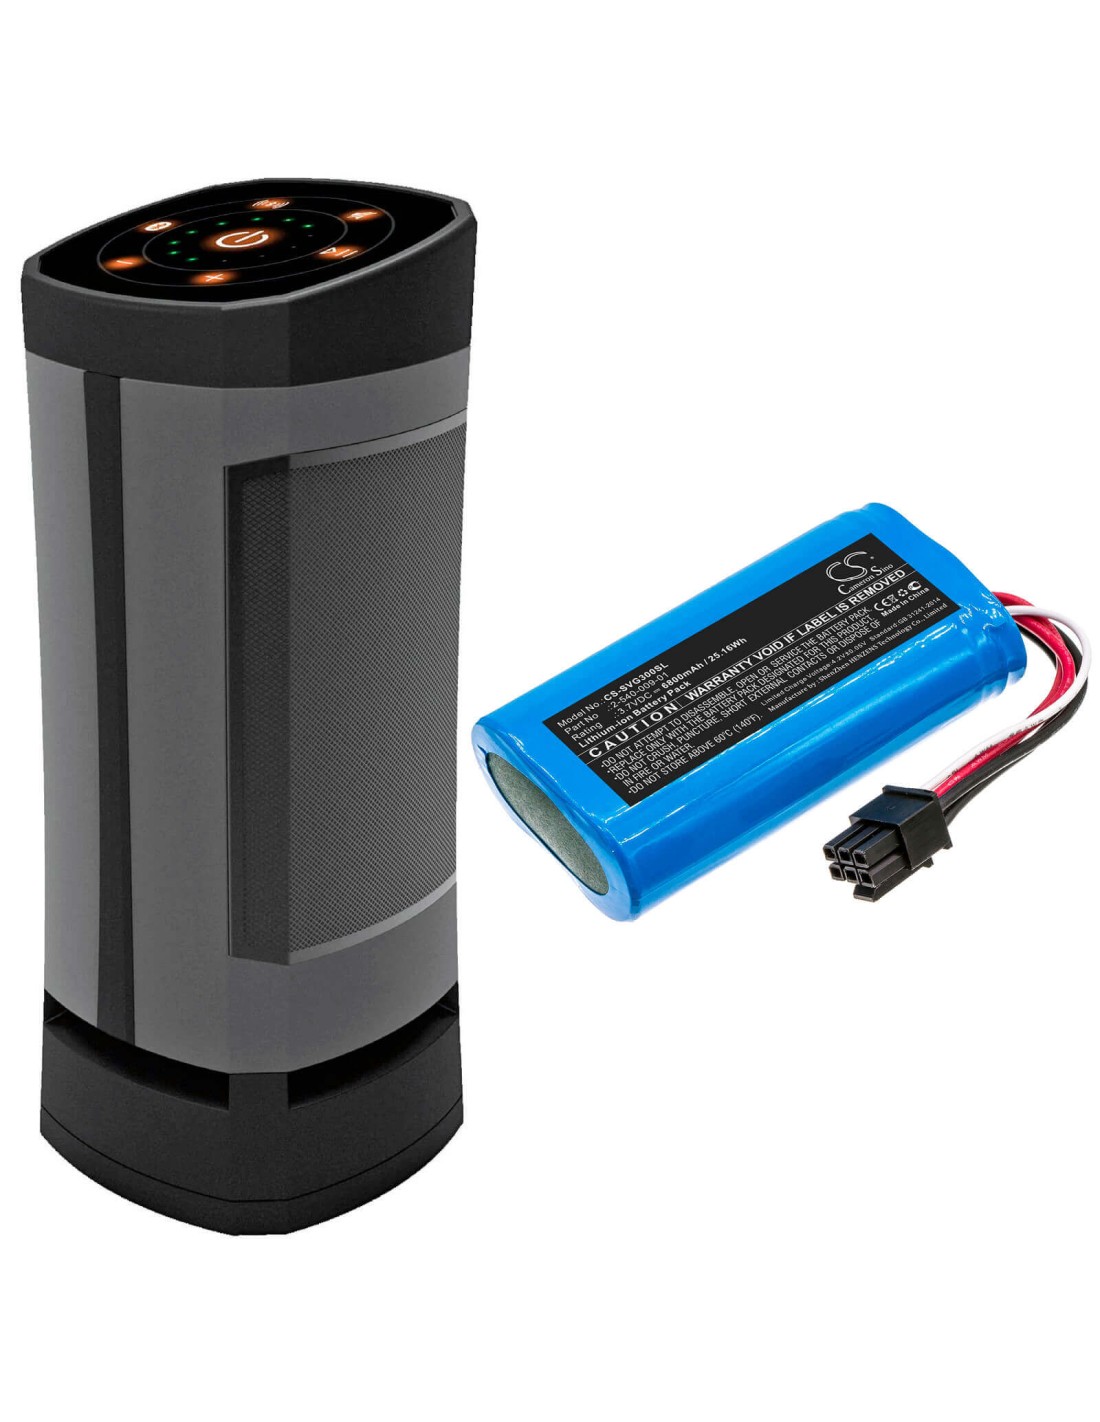 Battery for Soundcast, 21391-vgbt03a, Sud-vgbt03a, Vg3 3.7V, 6800mAh - 25.16Wh